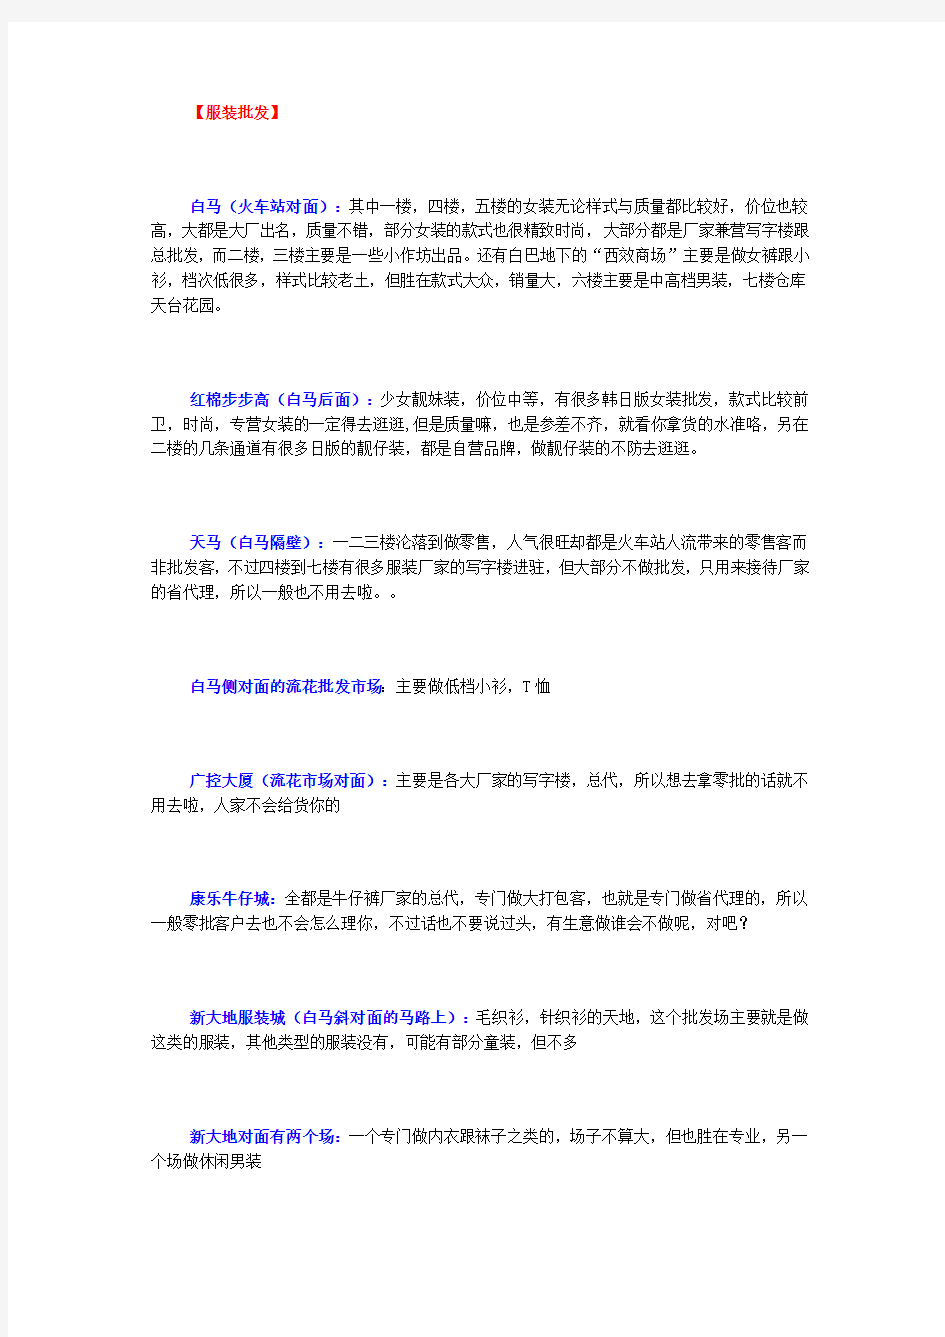 广州各行业批发市场汇总表